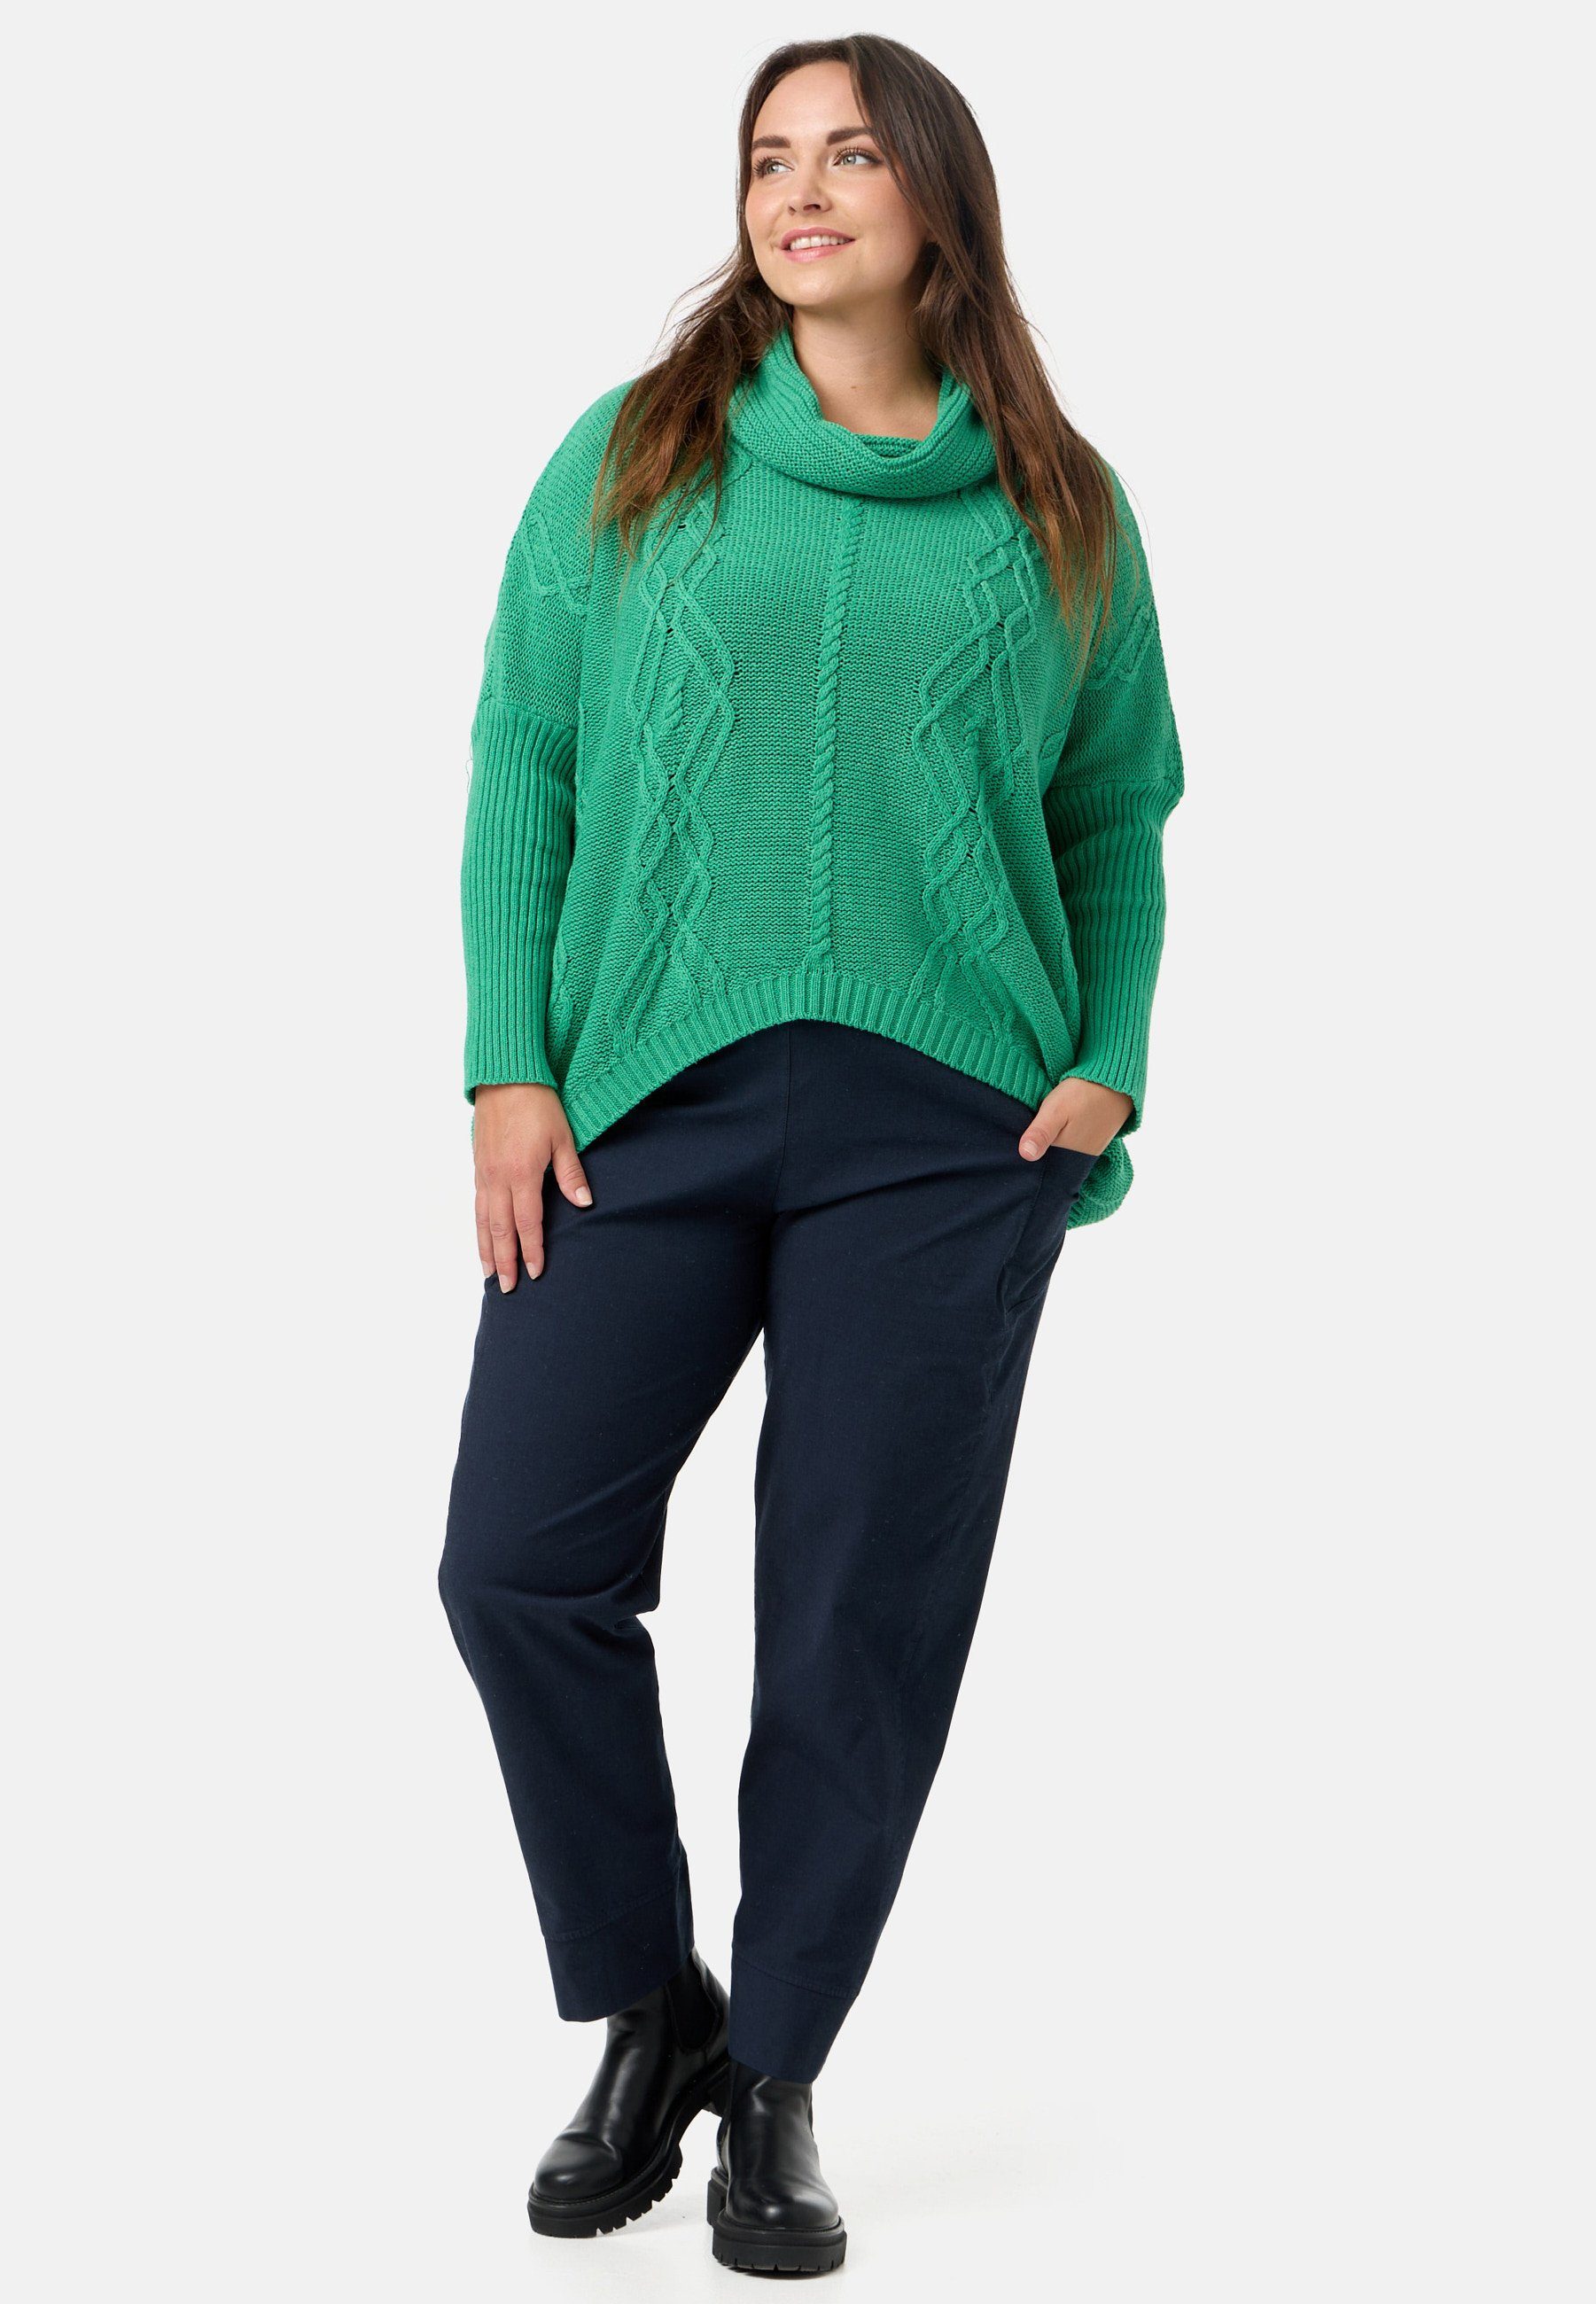 Kekoo Strickpullover Strick Poncho-Shirt mit Baumwolle Schalkragen 100% Smaragd aus 'Pure'